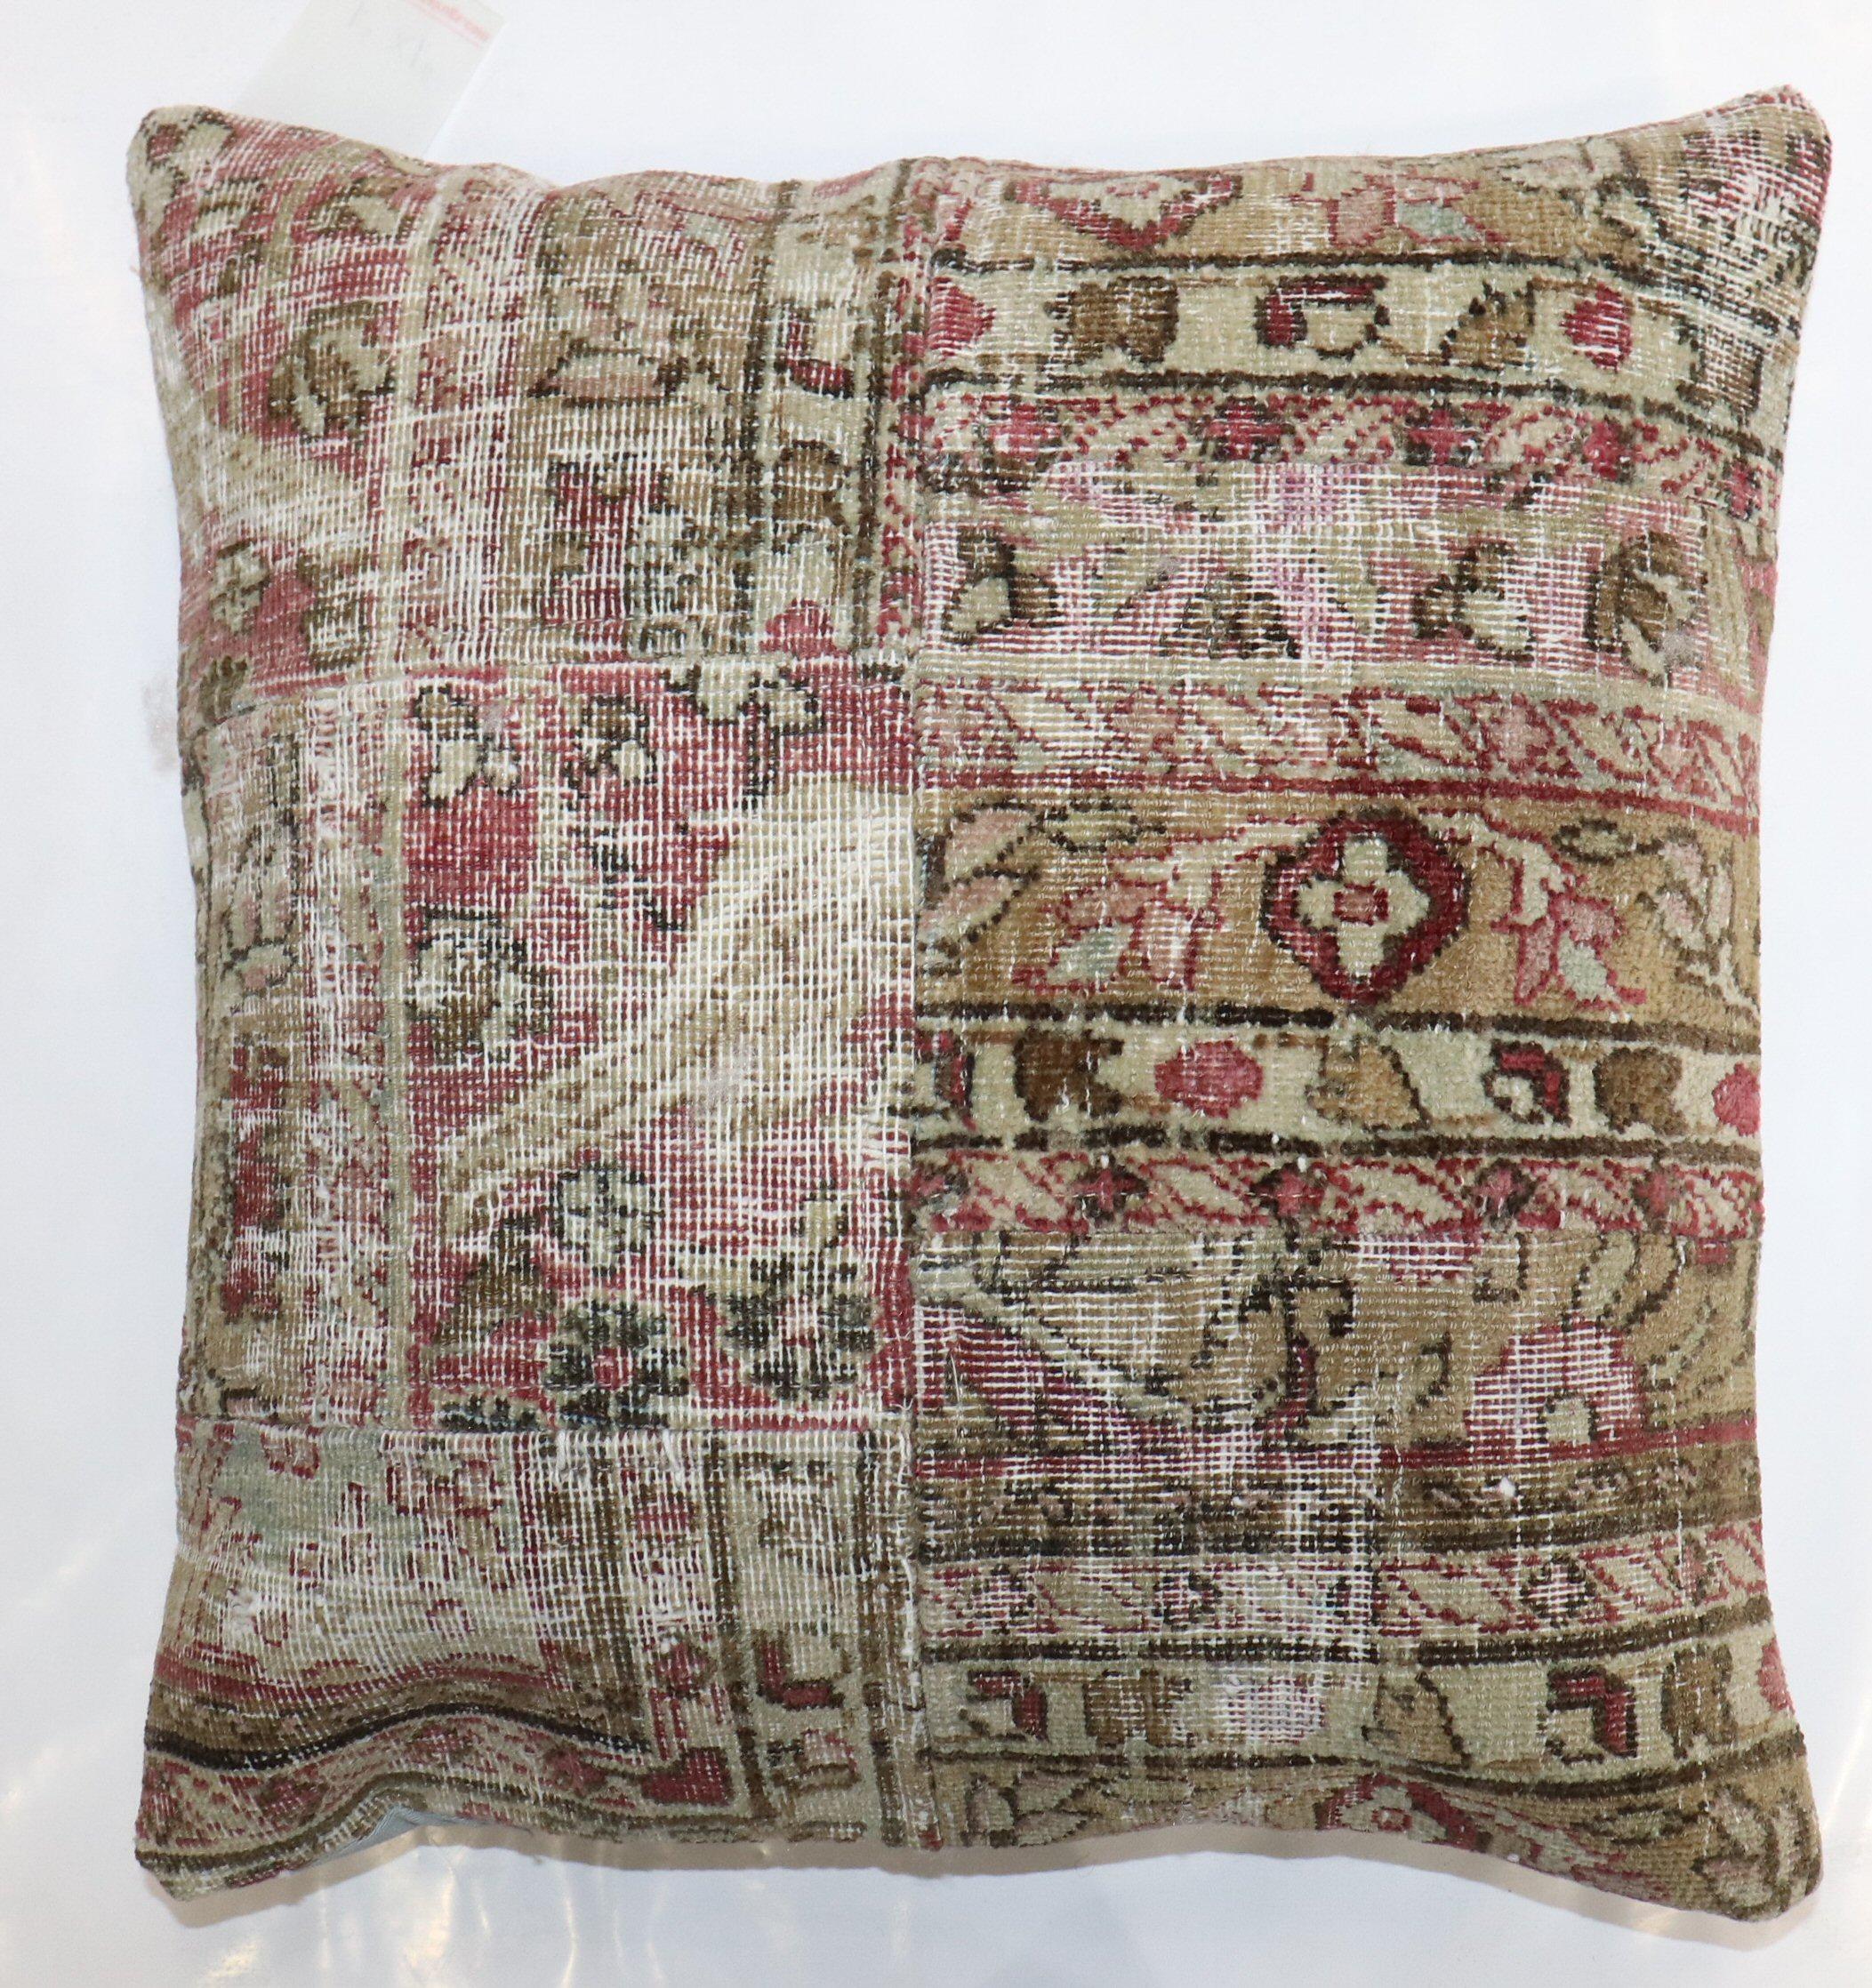 Oreiller réalisé à partir d'un tapis persan Kerman usé du XIXe siècle, transformé en patchwork. Insert de remplissage et fermeture à glissière fournis

Mesures : 18